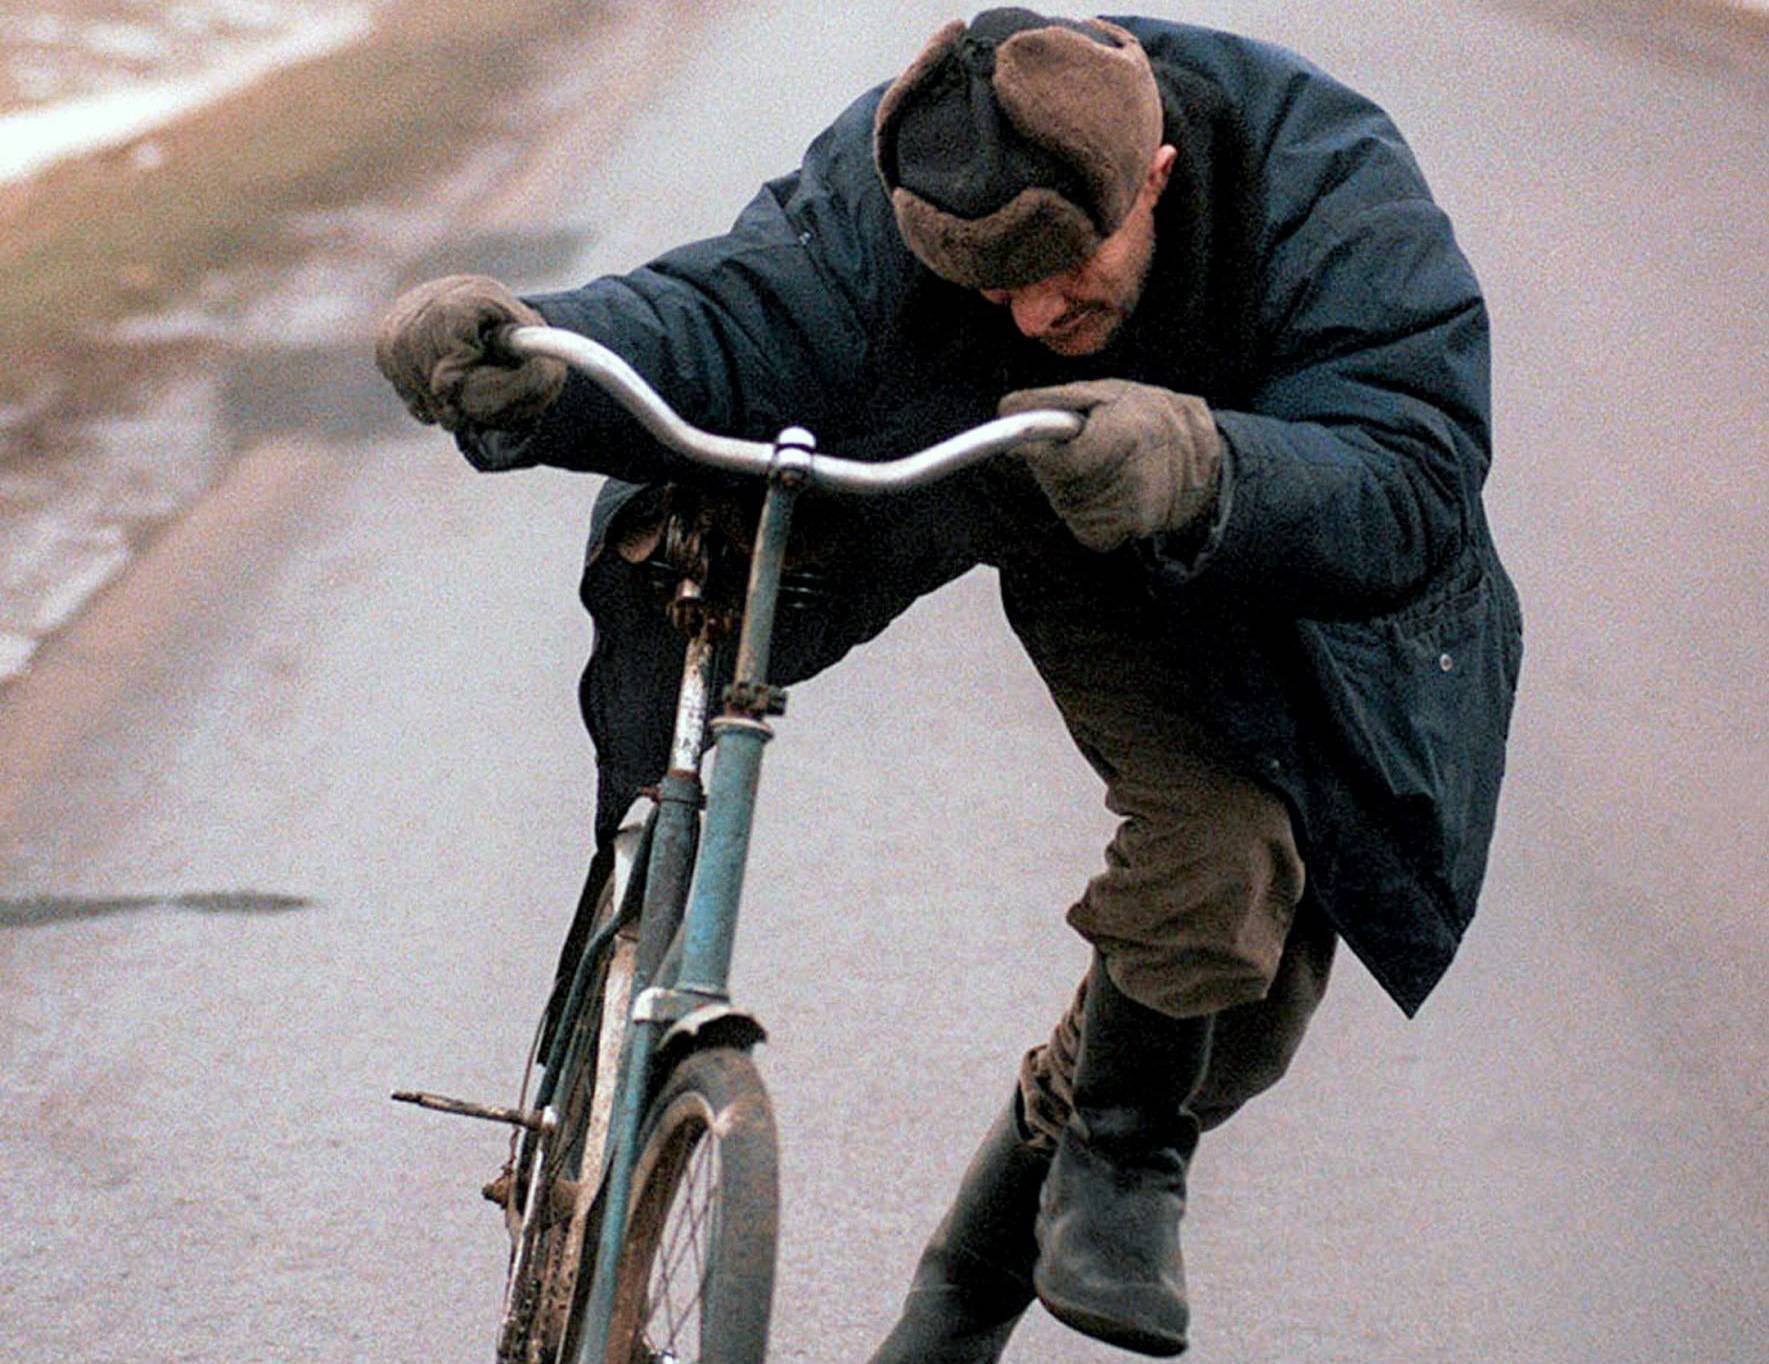 Могут ли лишить прав за езду в нетрезвом виде на велосипеде